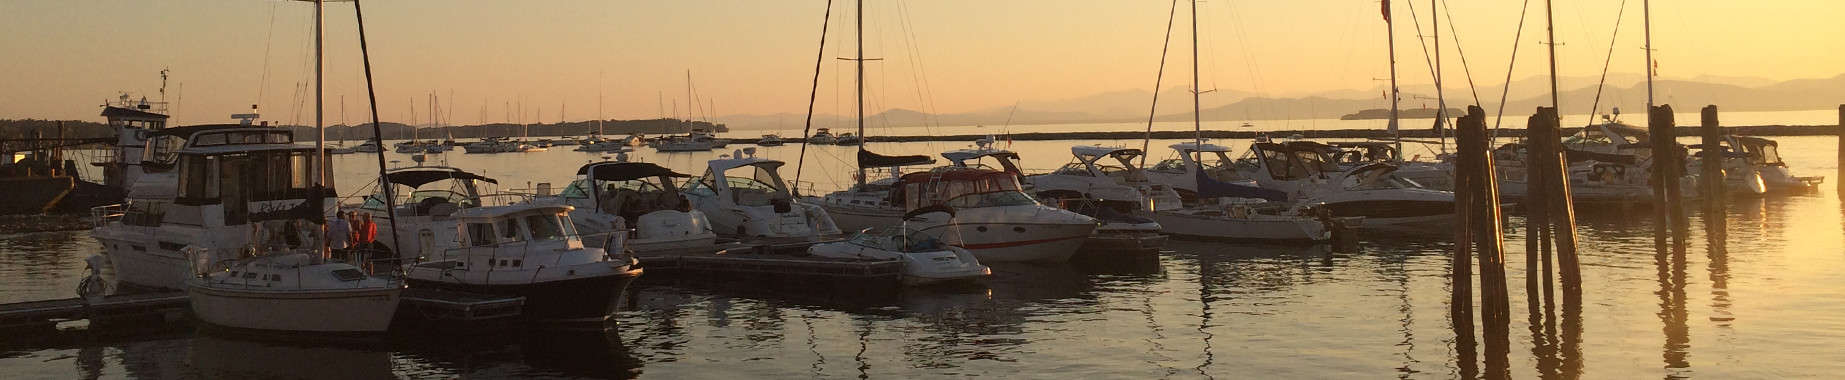 Burlington Parks & Rec - Marina Boats at Sunset